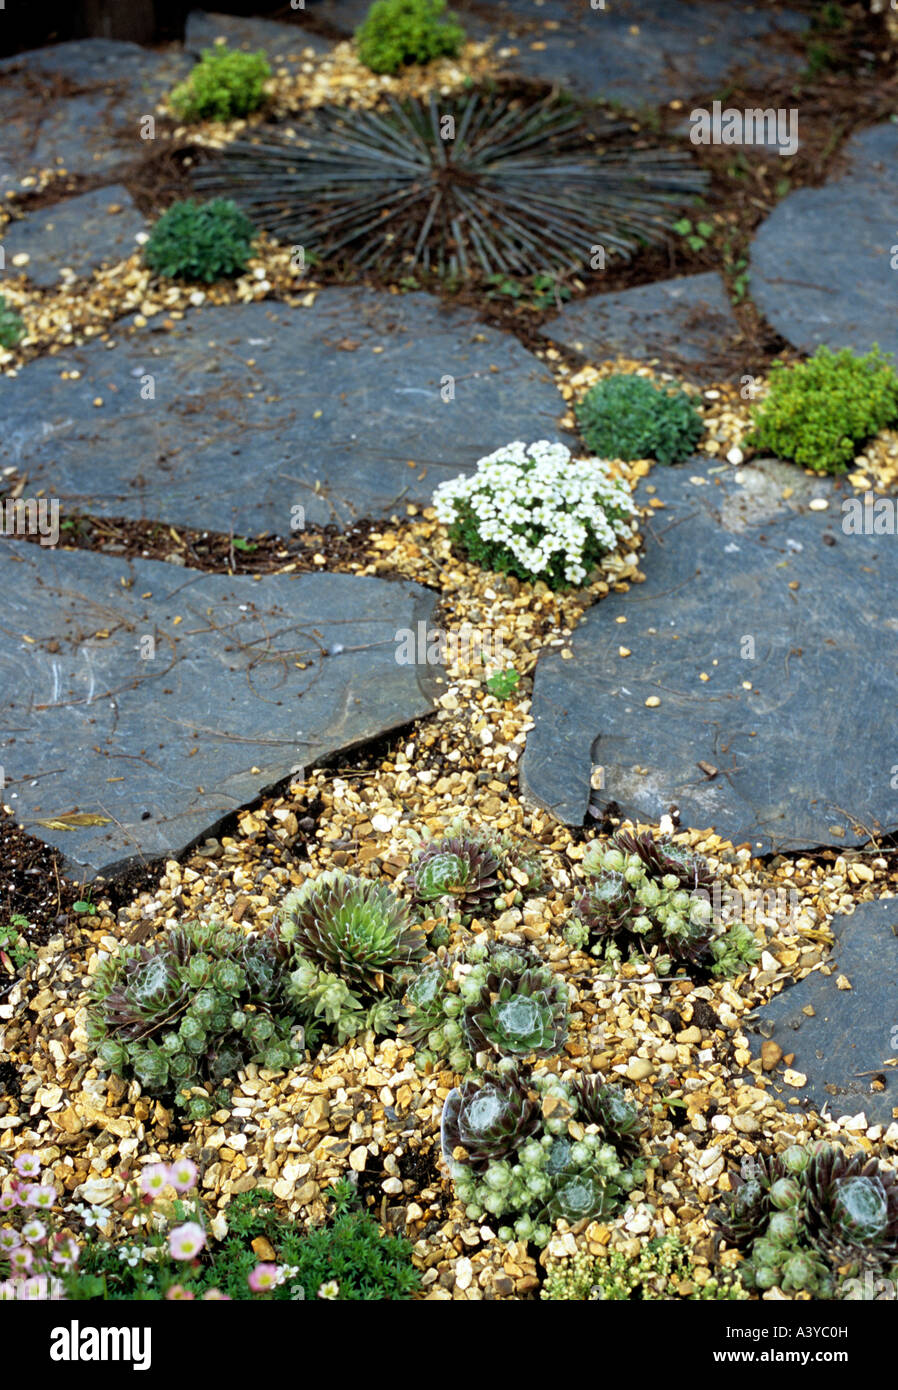 Schiefer-Pflaster, Platten, Kies, Aeonium und Alpines in einem London-Garten Stockfoto